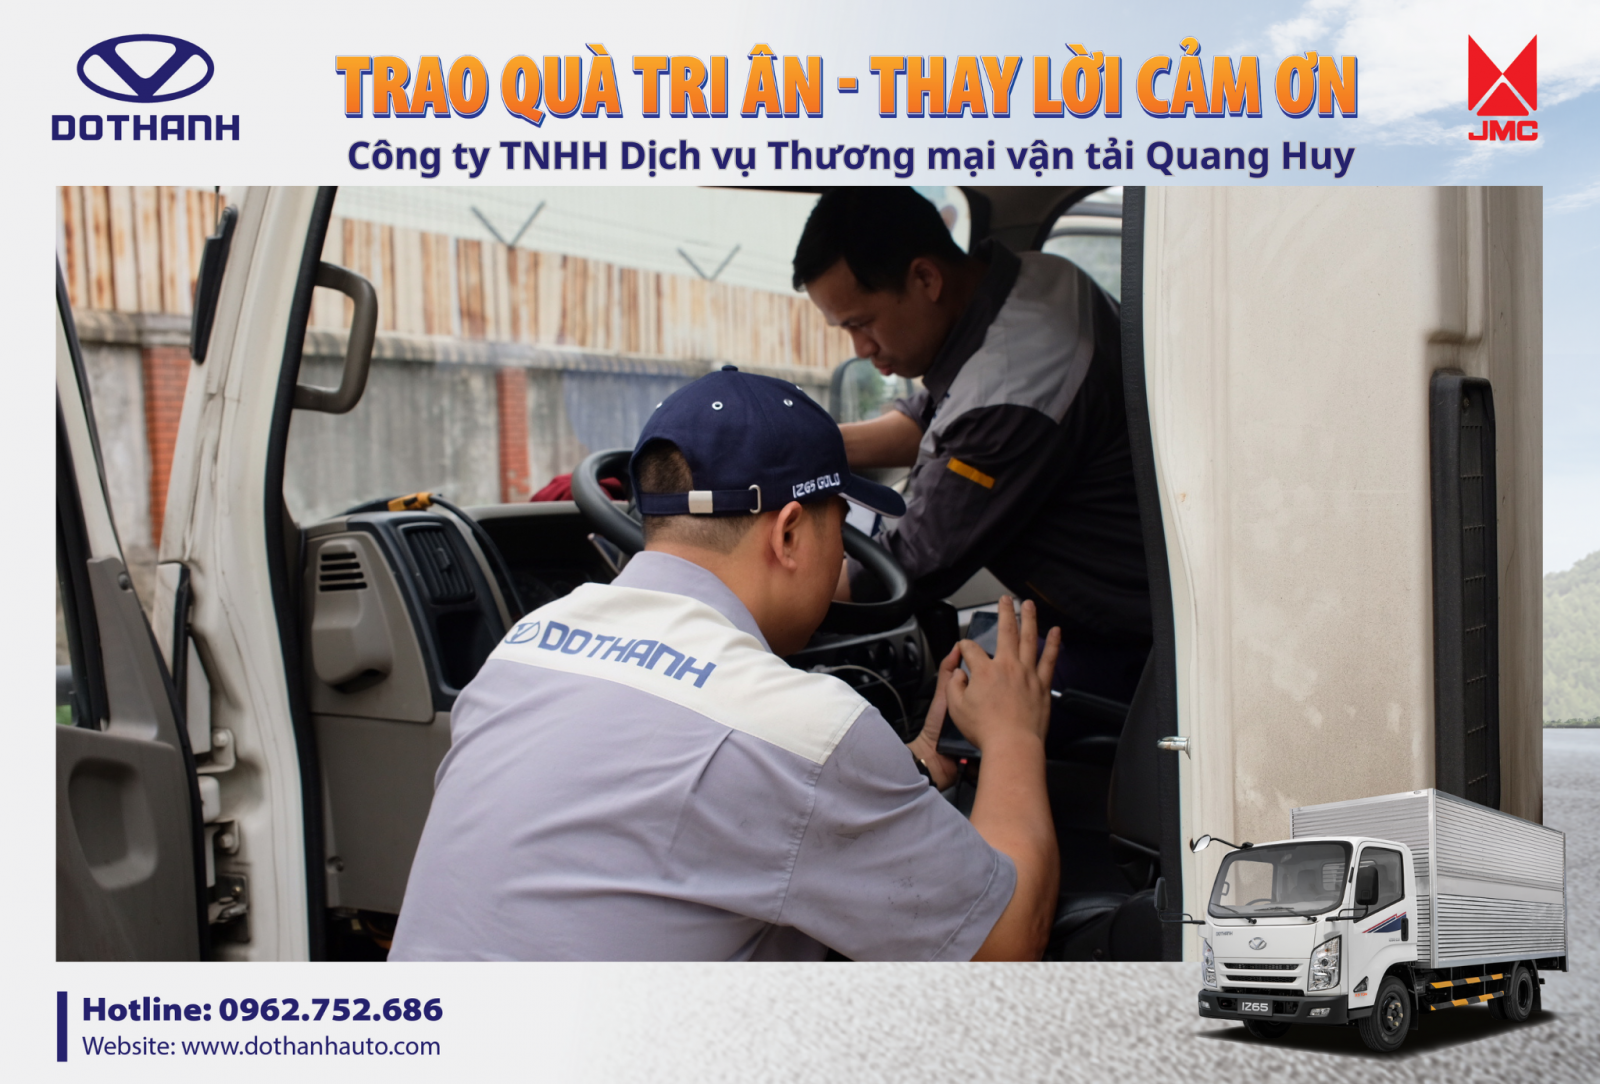 Các chuyên gia, kỹ thuật viên của DoThanh Auto và đại lý Auto Đông Nam kiểm tra xe tổng quát cho đội xe DOTHANH IZ65 của doanh nghiệp Quang Huy trong chương trình tri ân khách hàng